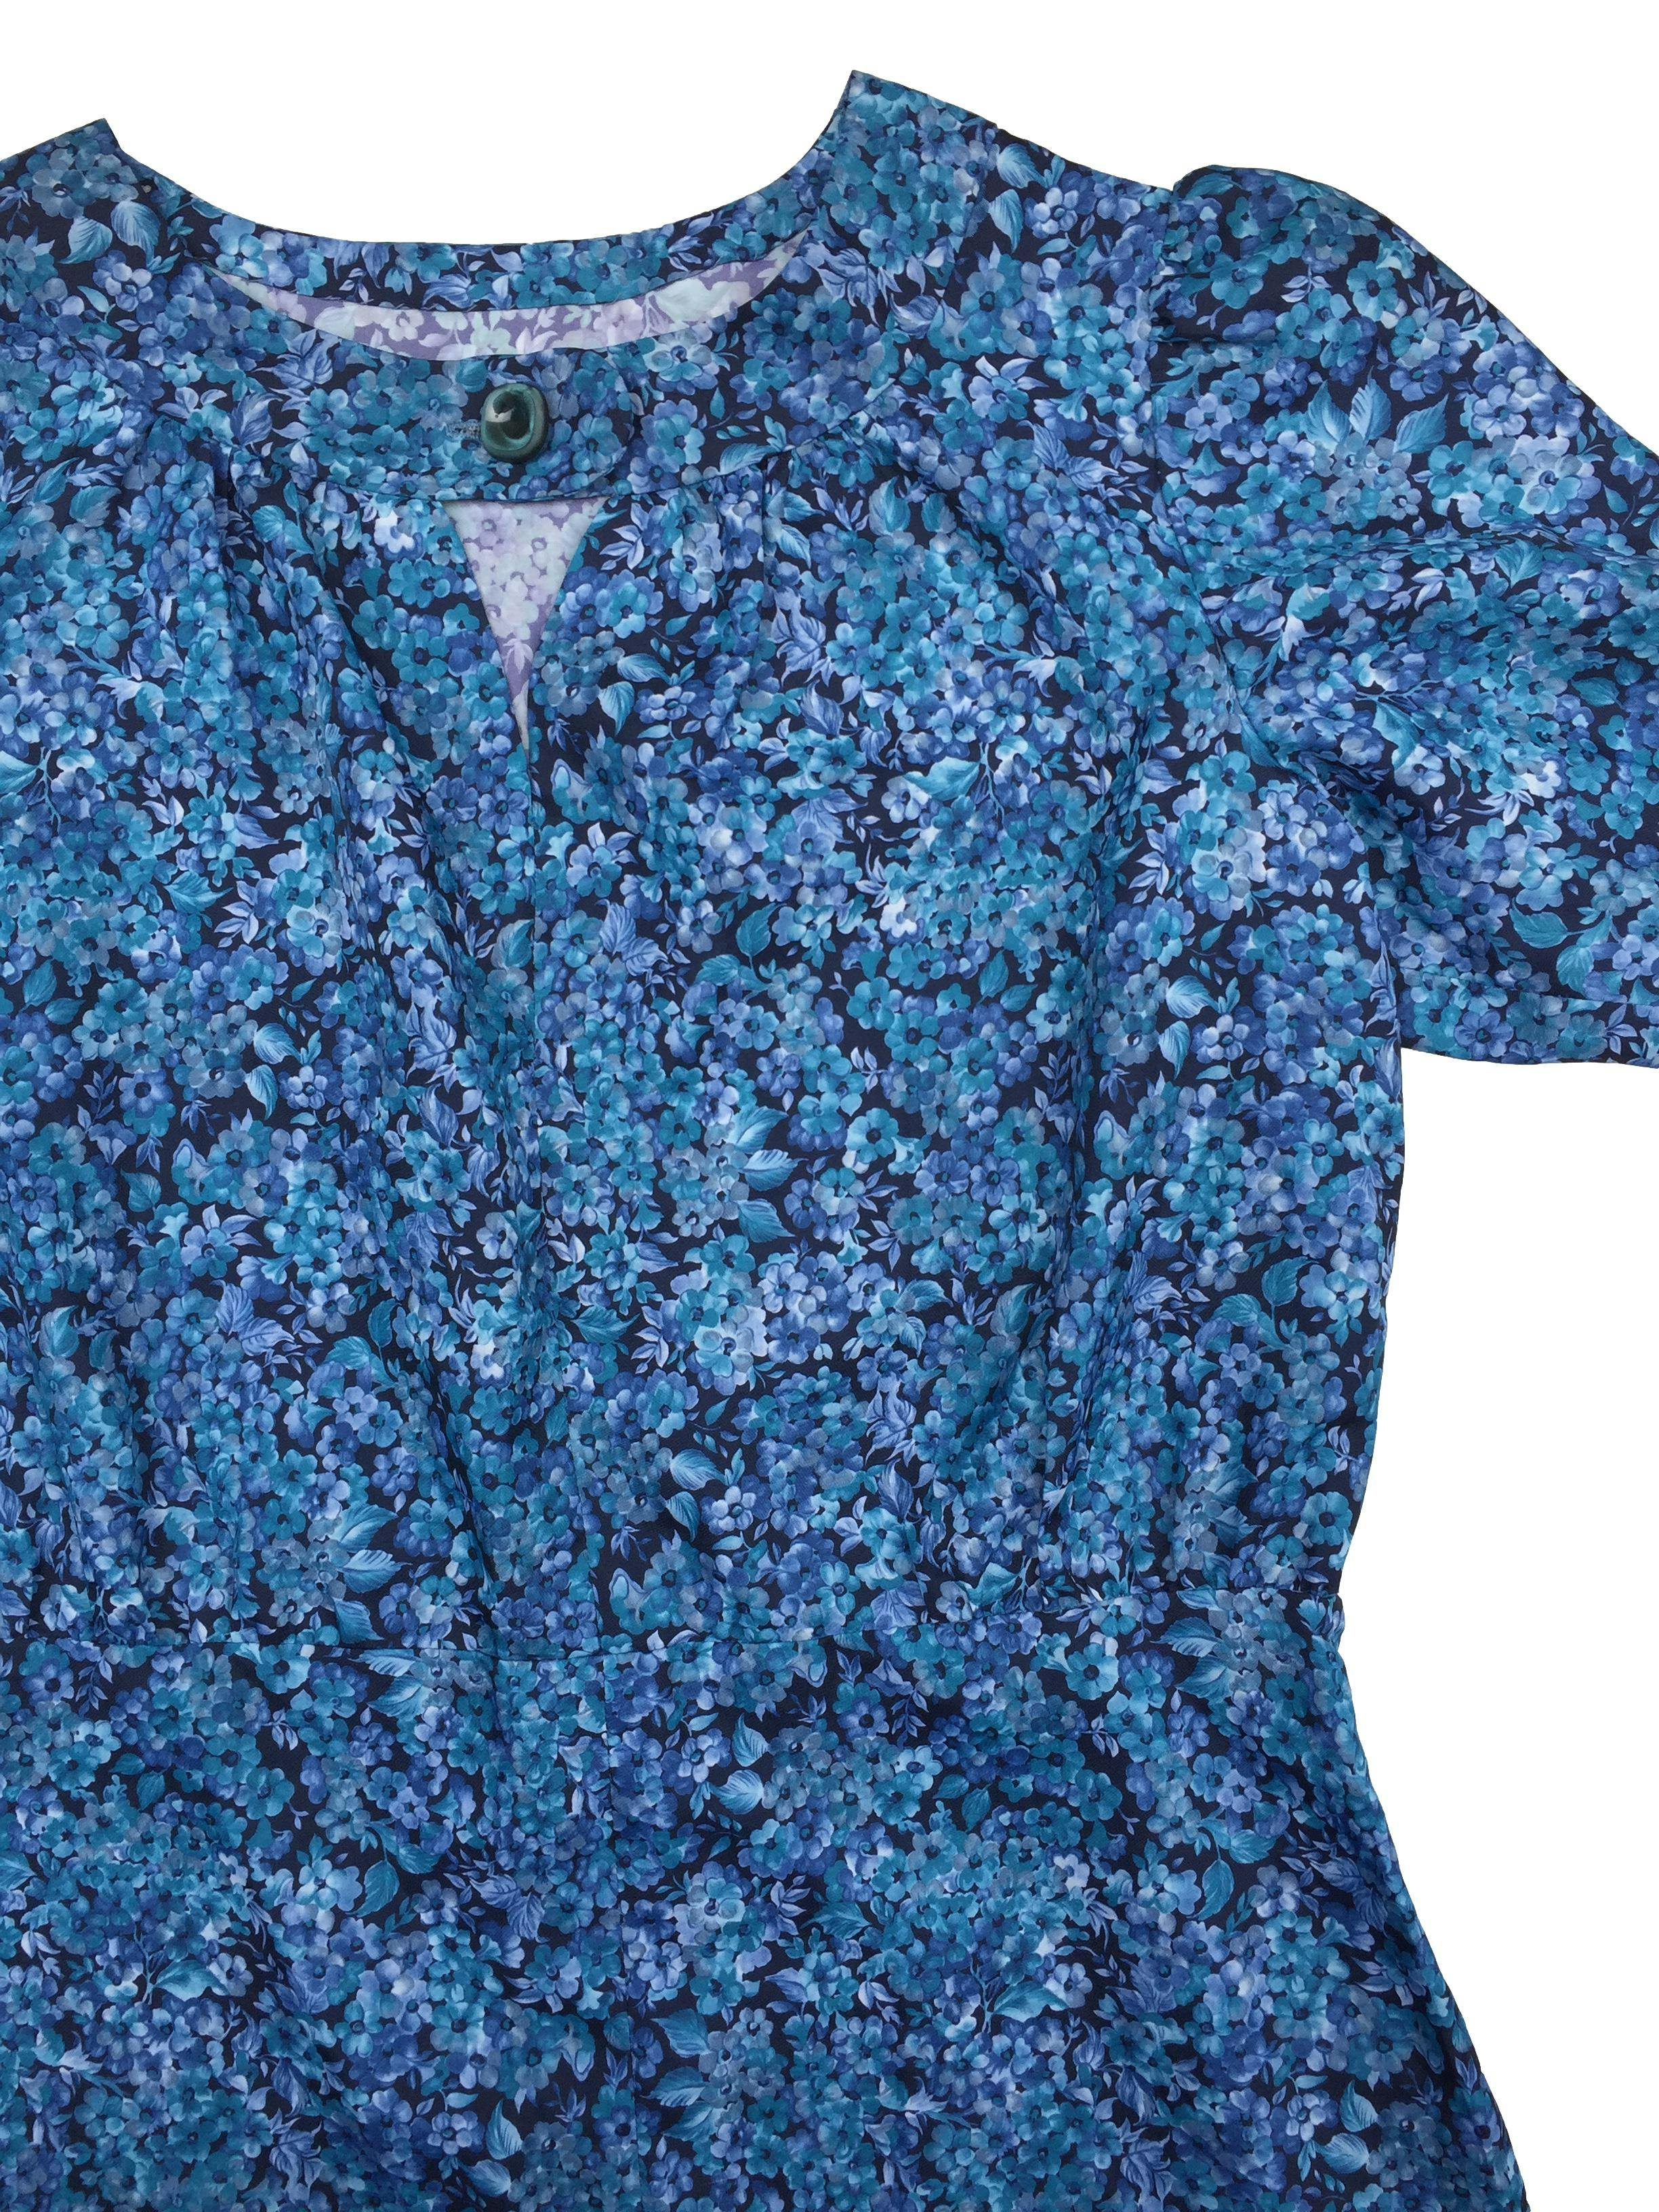 Vestido vintage azul con flores, botón y abertura en cuello, cierre lateral. Busto: 110cm. Largo: 102cm